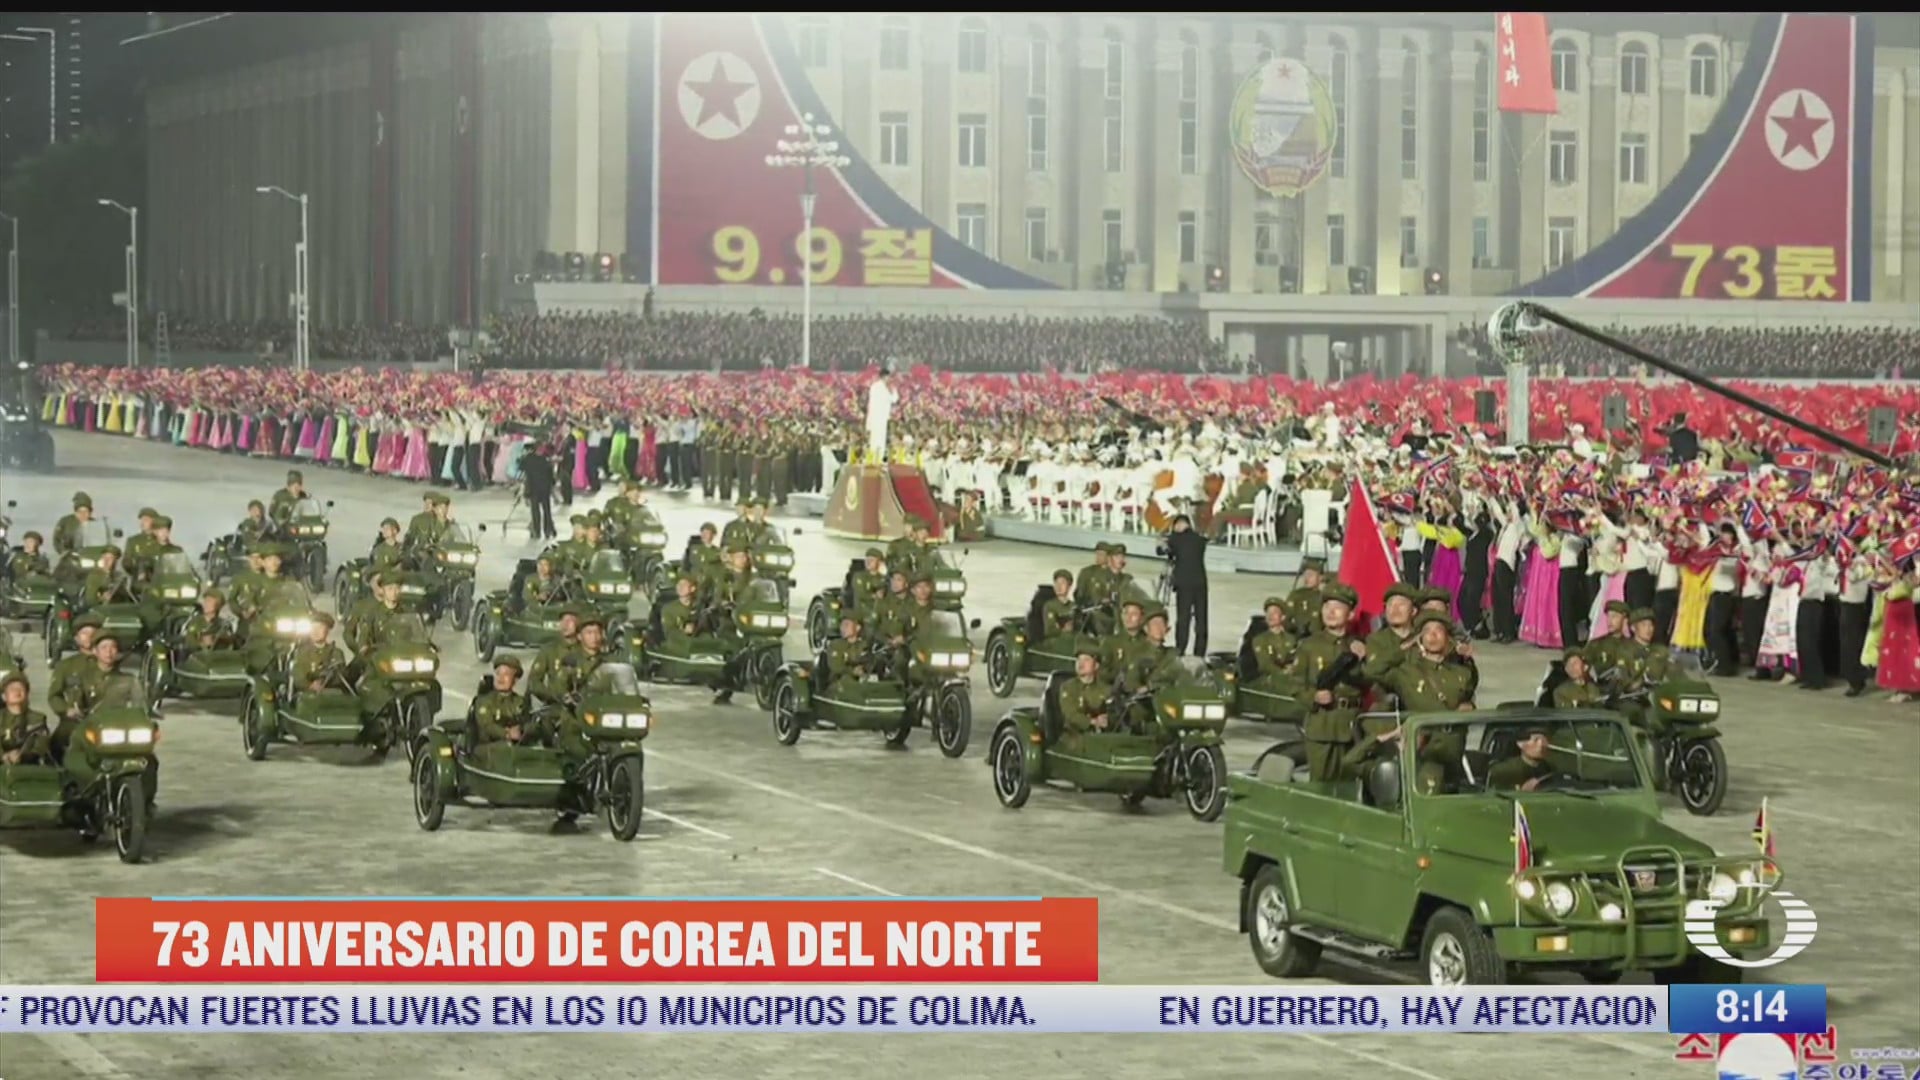 corea del norte celebra el 73 aniversario de su fundacion con desfile militar